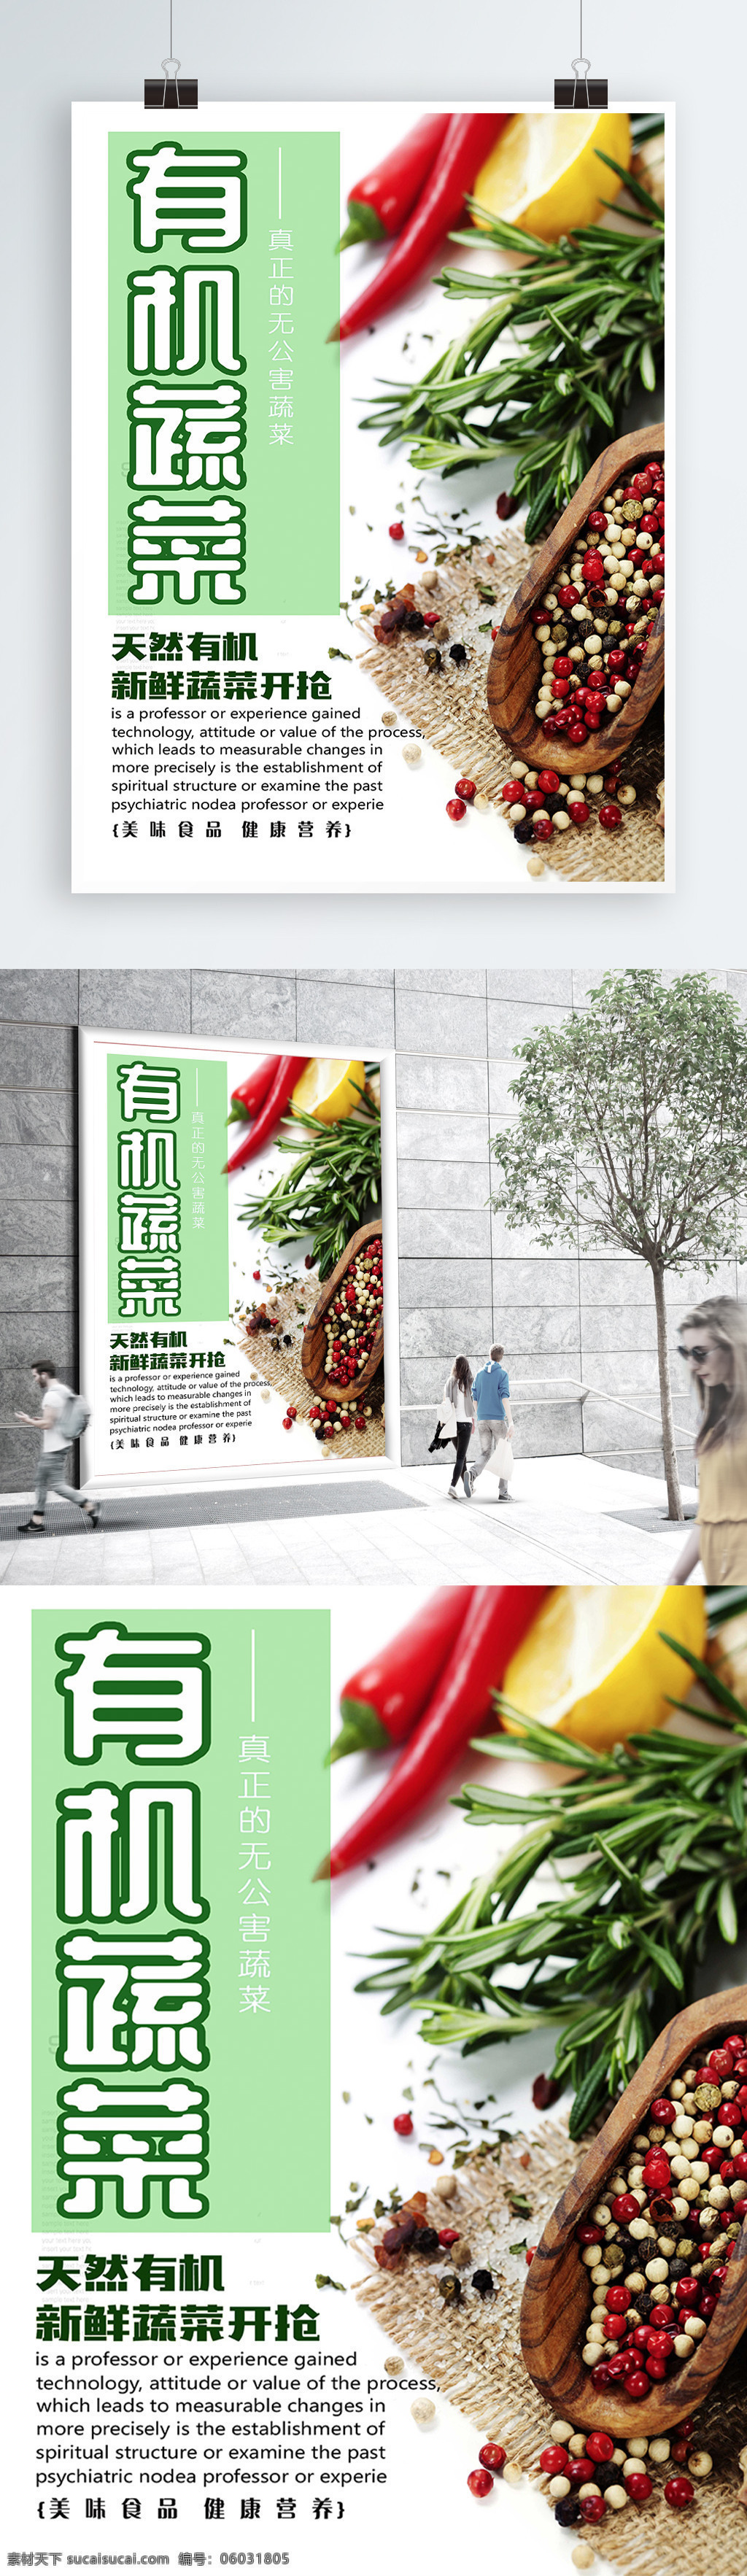 白色 背景 简约 大气 绿色 有机 蔬菜 宣传海报 健康 食品安全 欢迎来电